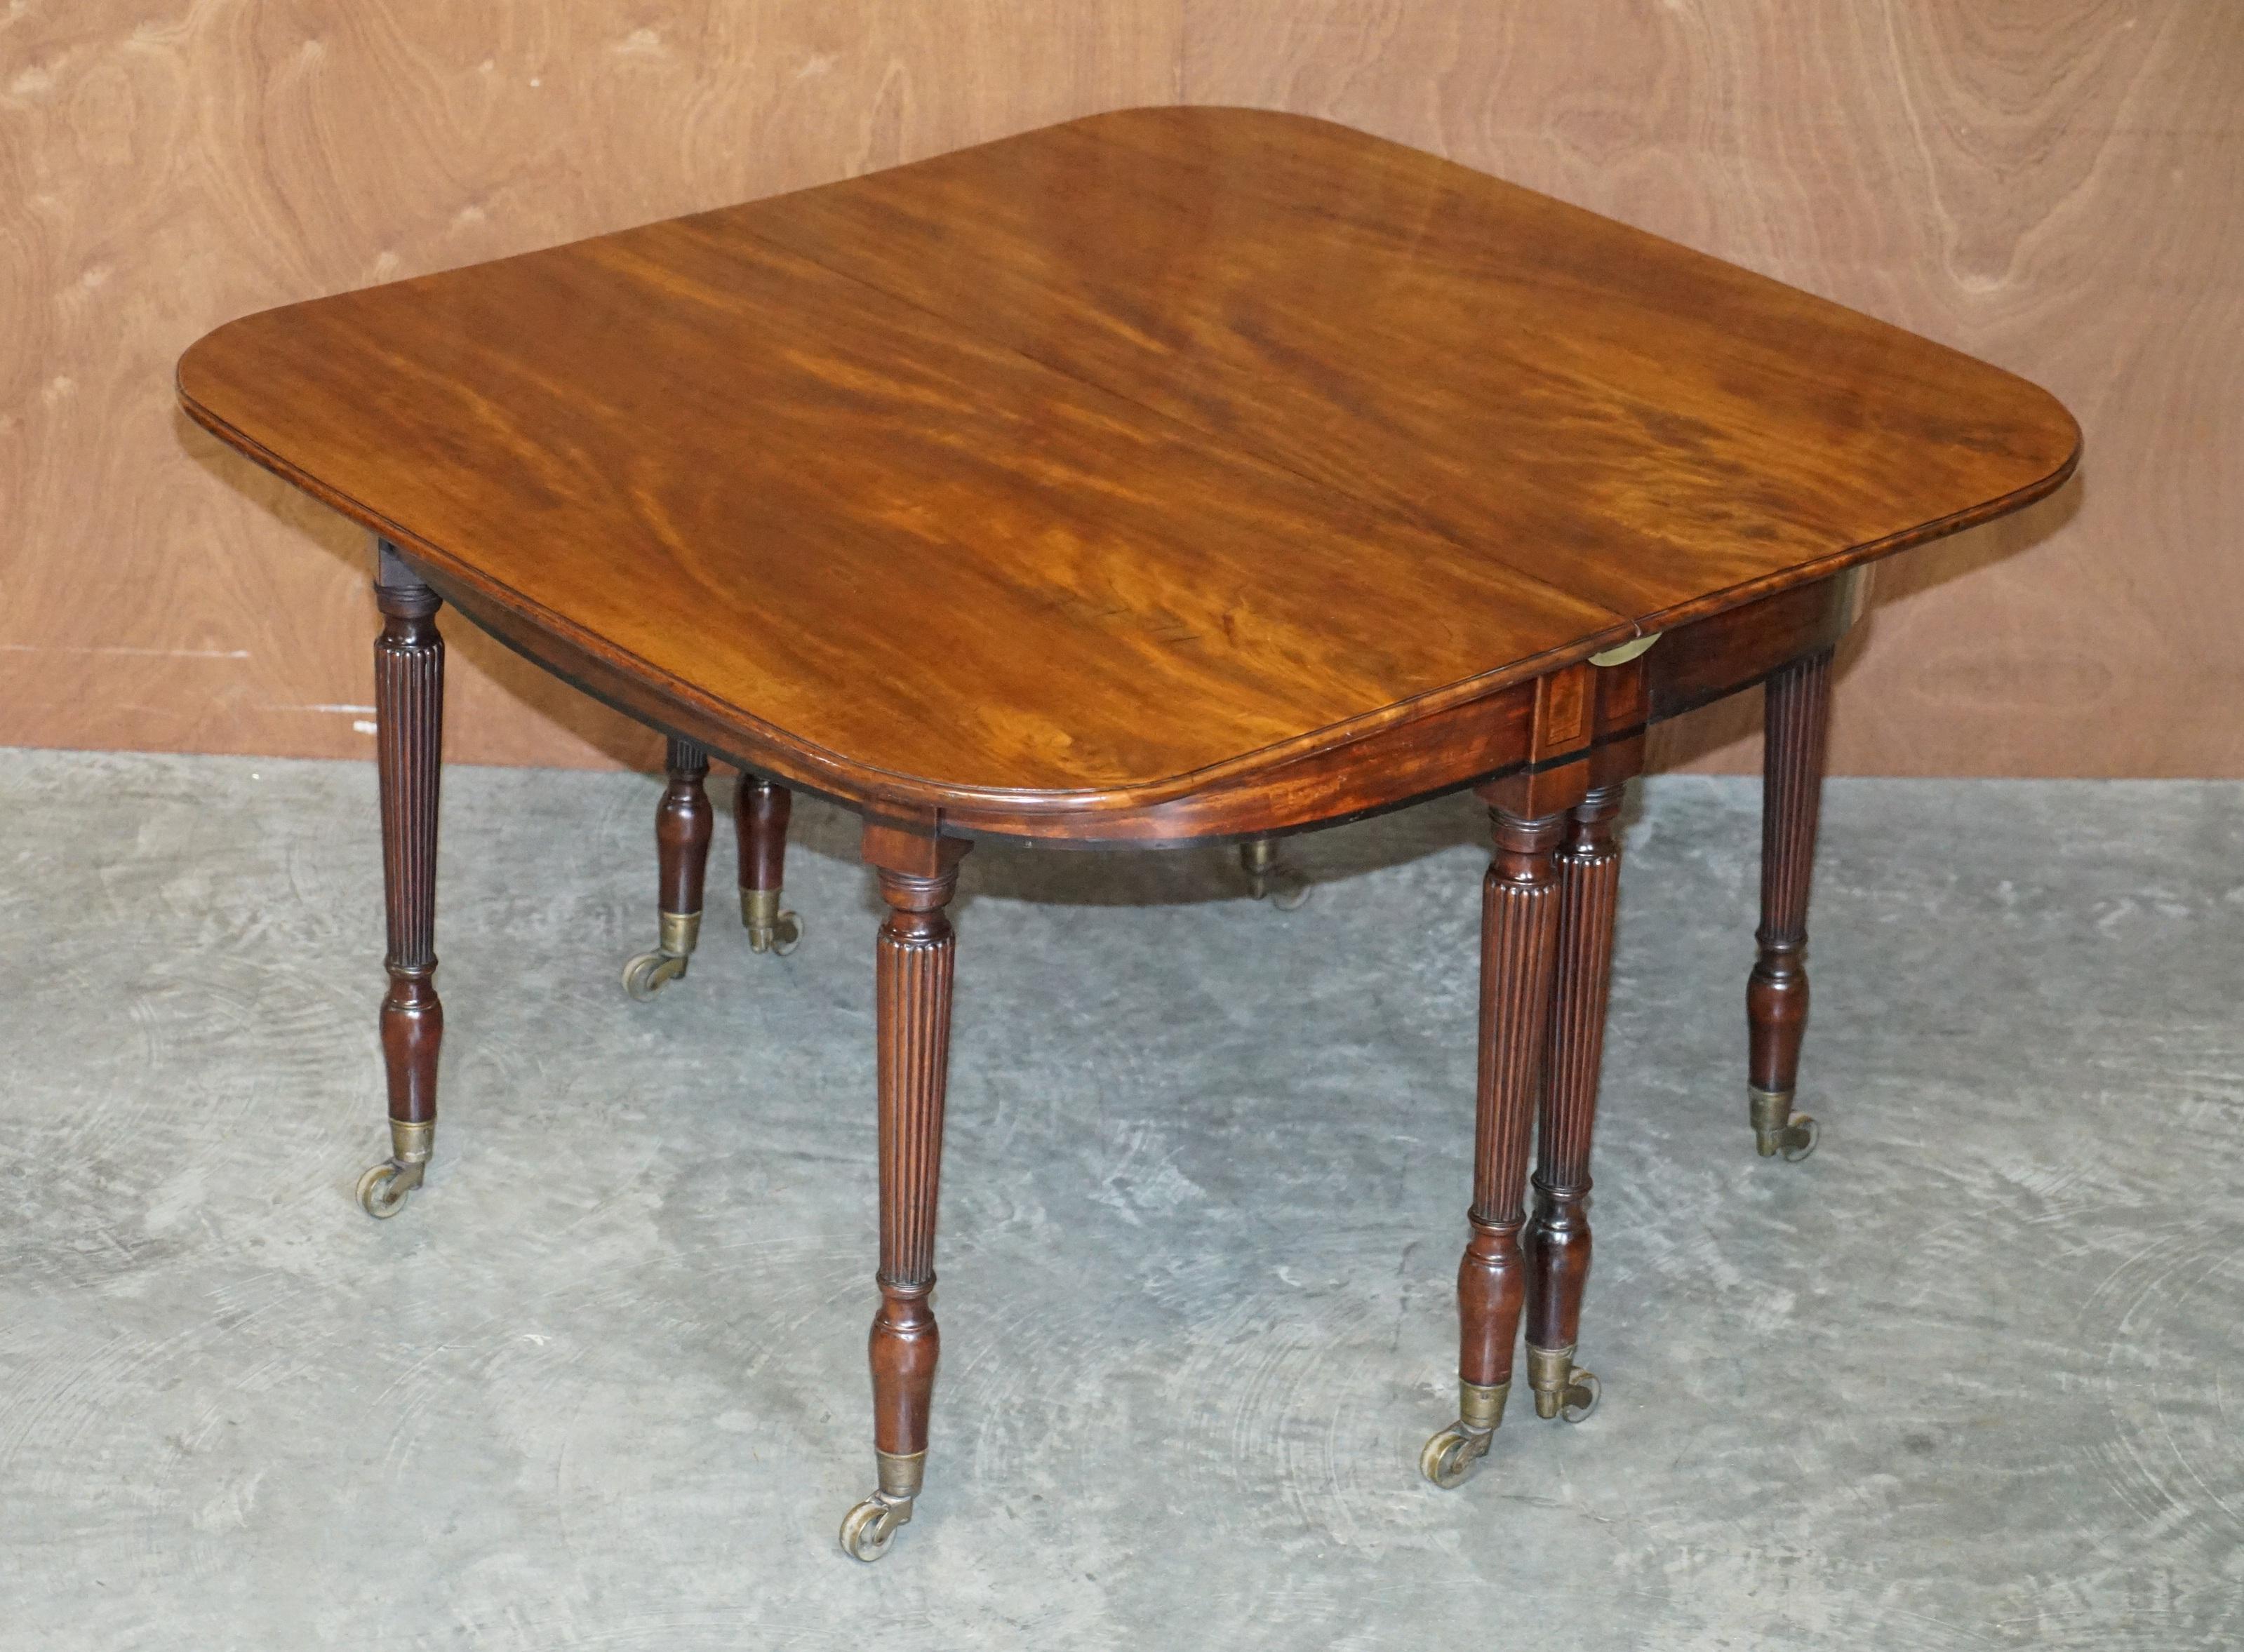 Wir freuen uns, diesen wunderschön restaurierten Esstisch aus gemasertem Mahagoni aus der Zeit um 1830 nach einem Entwurf von Gillows zum Verkauf anzubieten

Dieser Tisch ist exquisit mit einer Holzpatina zum Sterben, die reiche warme Maserung ist